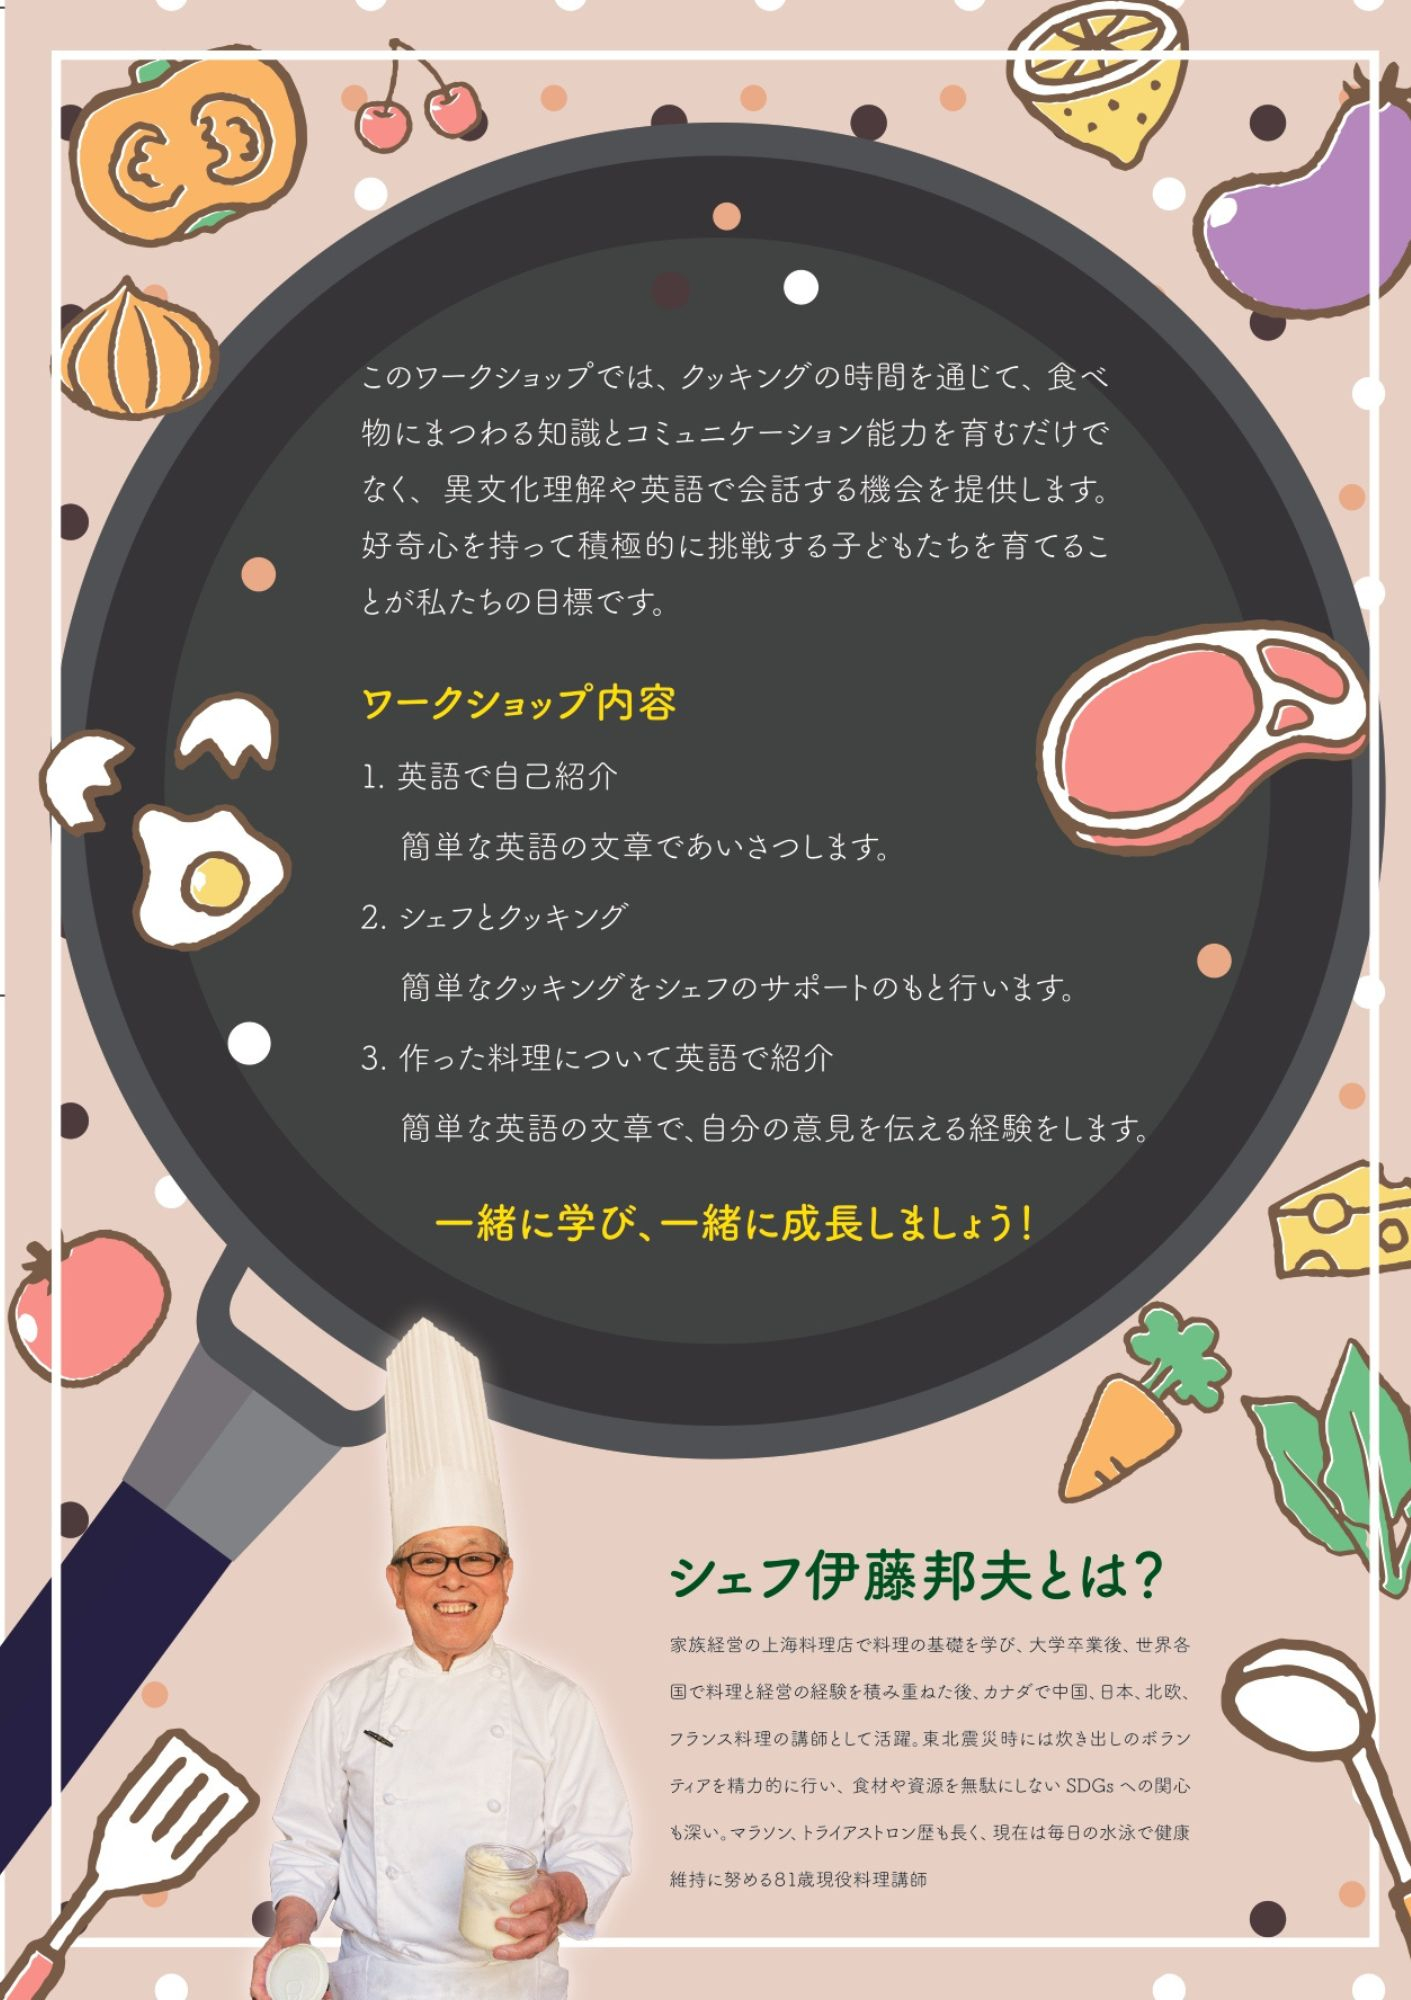 シェフ英語でキッチン広告裏 (2)_page-0001.jpg